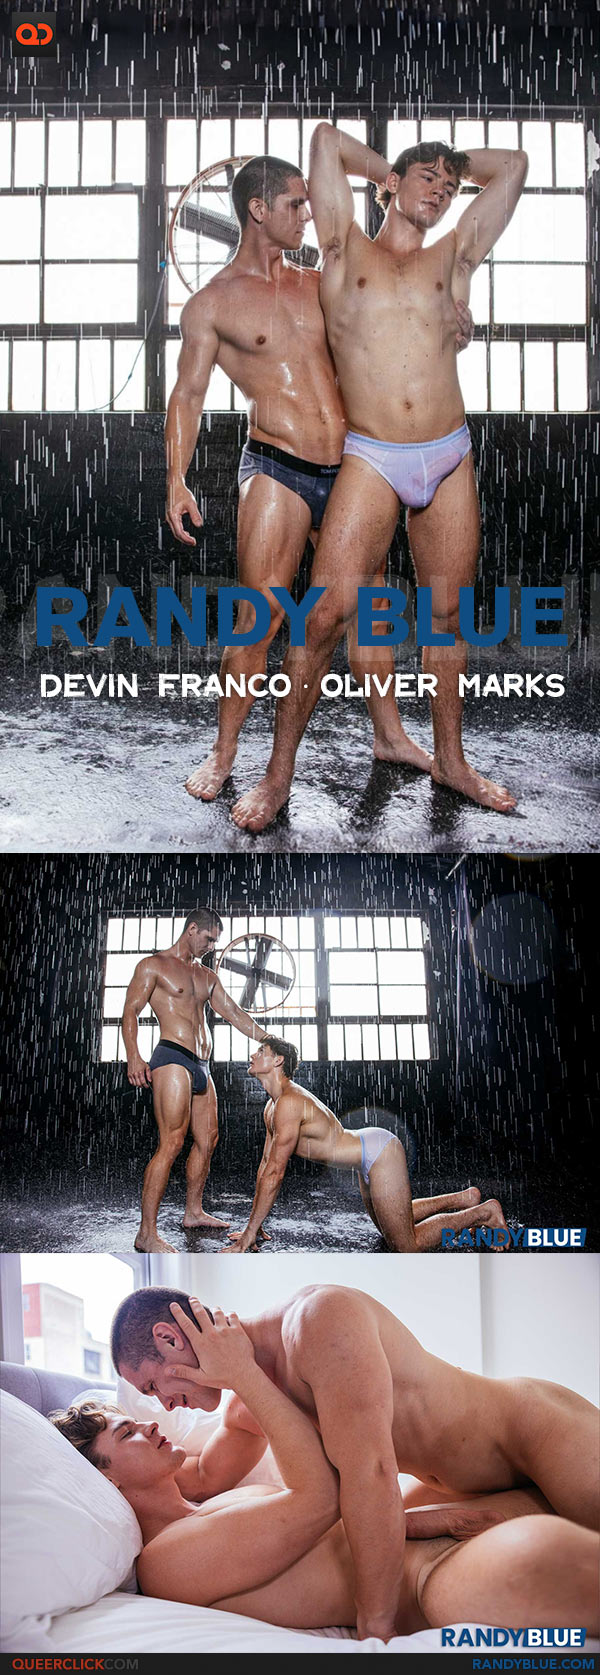 Randy Blue: Devin Franco Fucks Oliver Marks - Beef